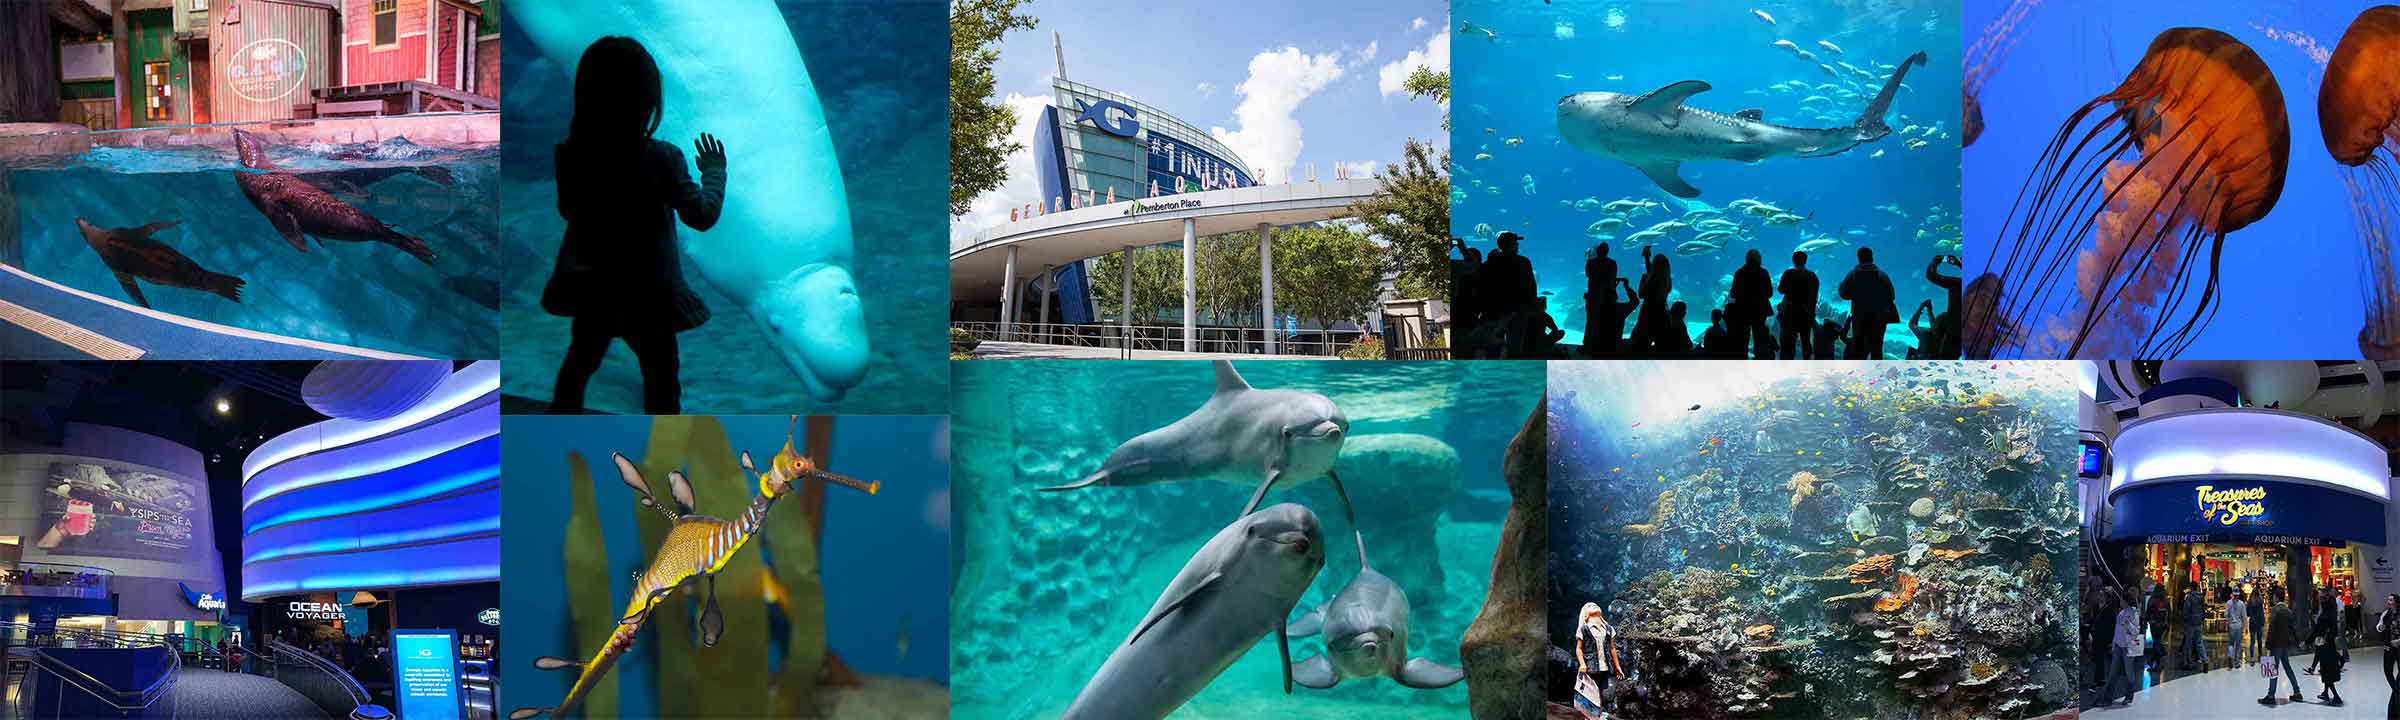 Georgia Aquarium indoor oceans banner